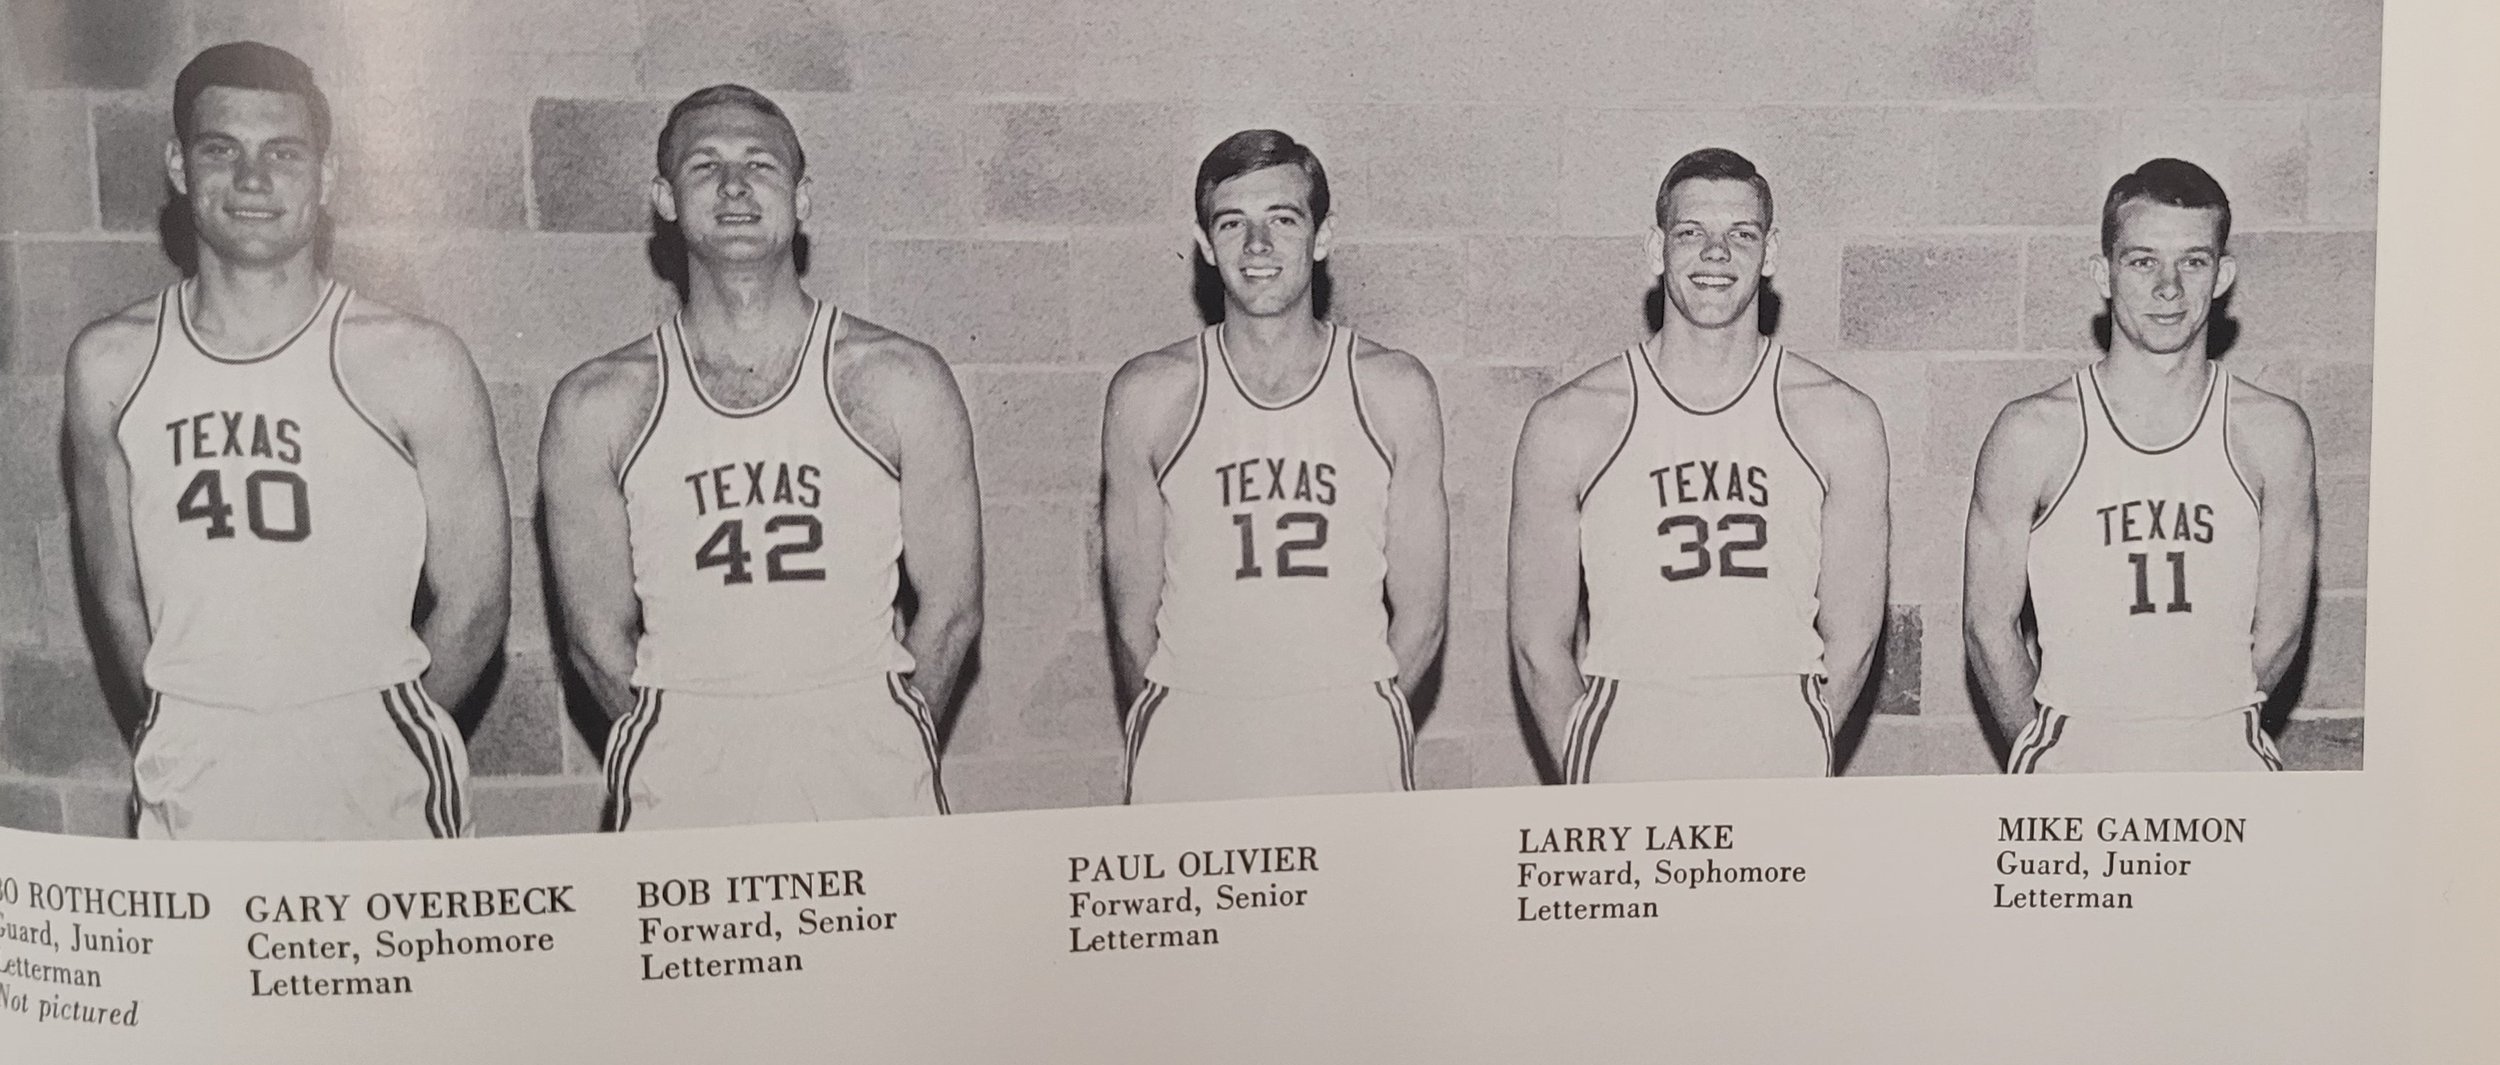  1965 basketball  Overbeck, Ittner, Olivier, Lake, Gammon 